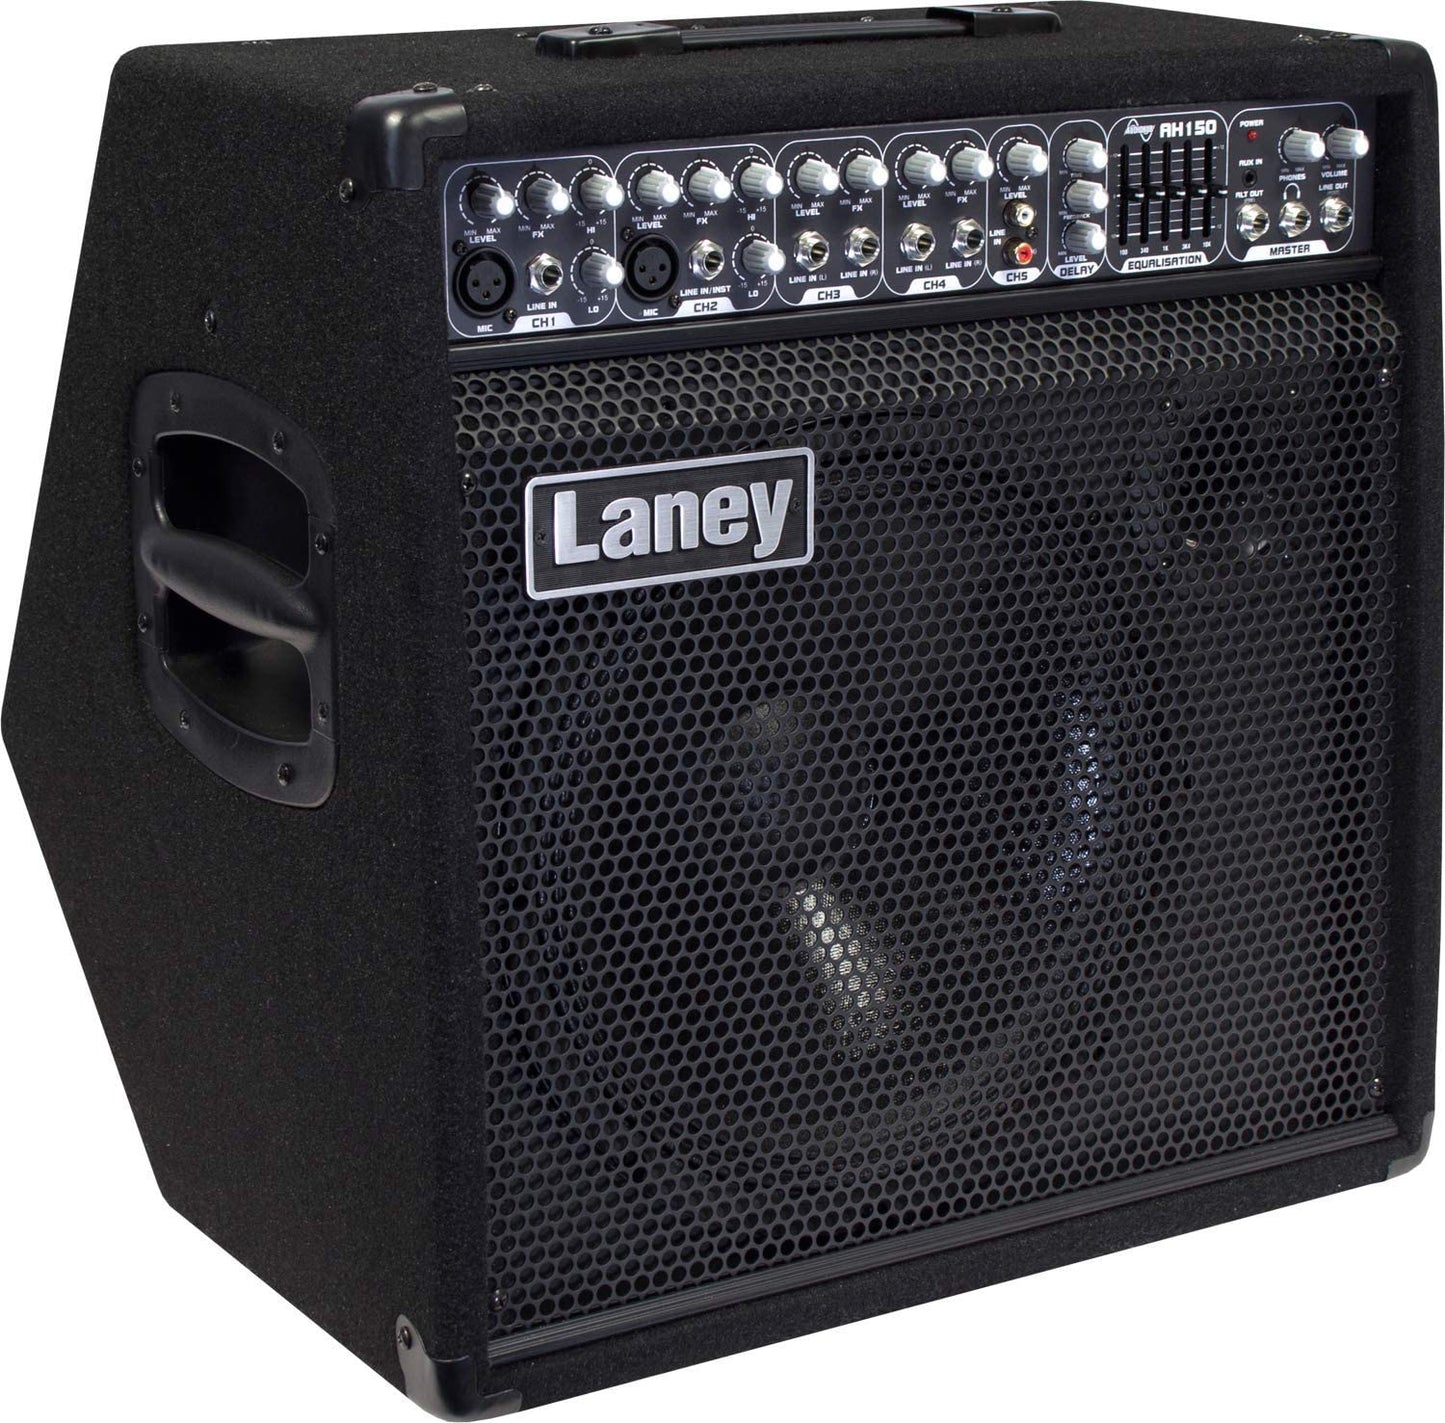 LANEY AH150 5 Guitar Combo Amplifier